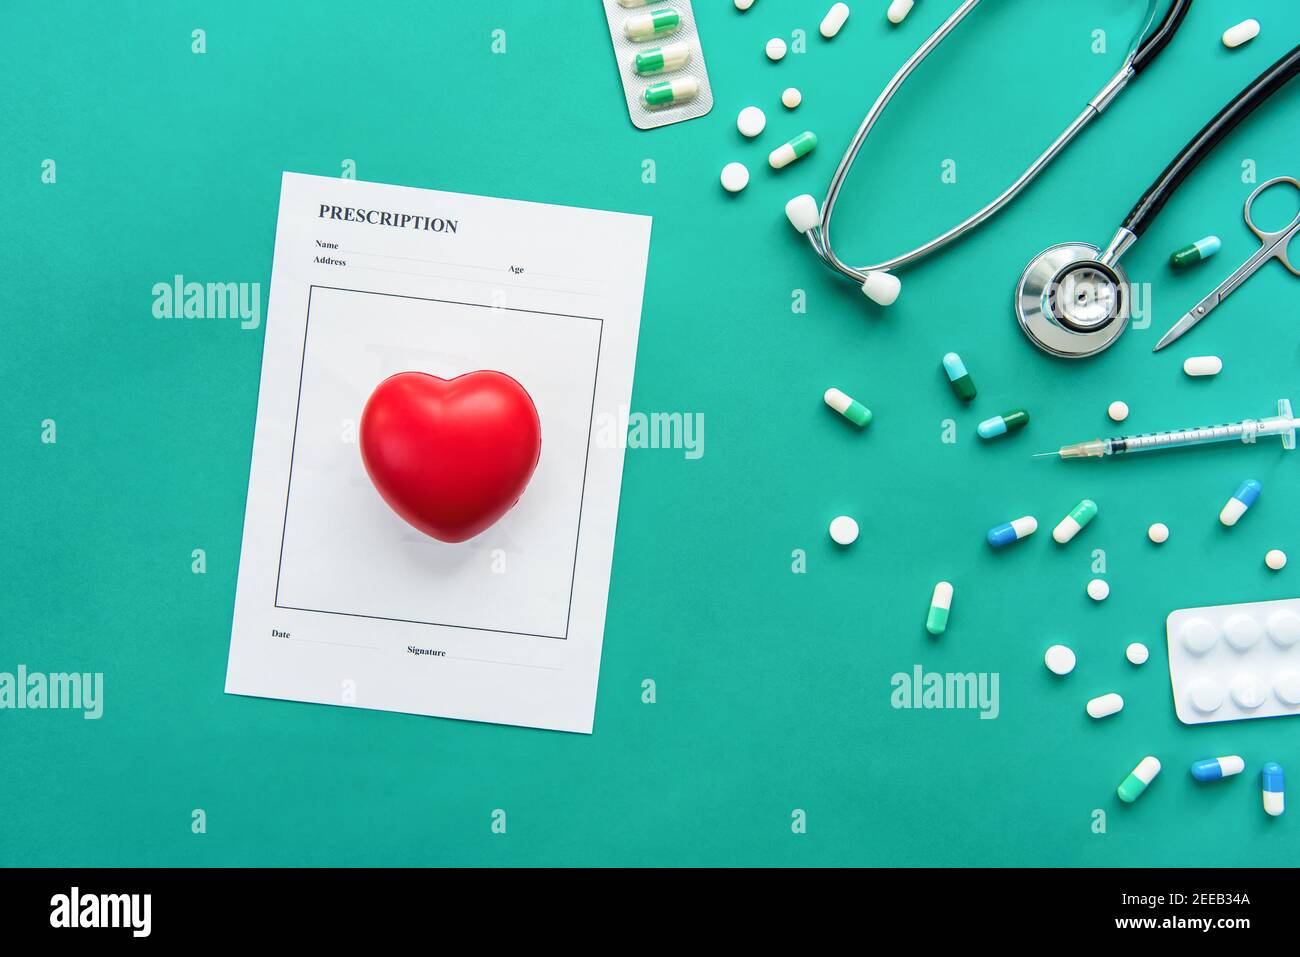 Medikamente und medizinische Instrumente einschließlich Stethoskop, Spritze, Schere und Rezept mit roten Herz-Form Ball auf grünem Hintergrund Stockfoto